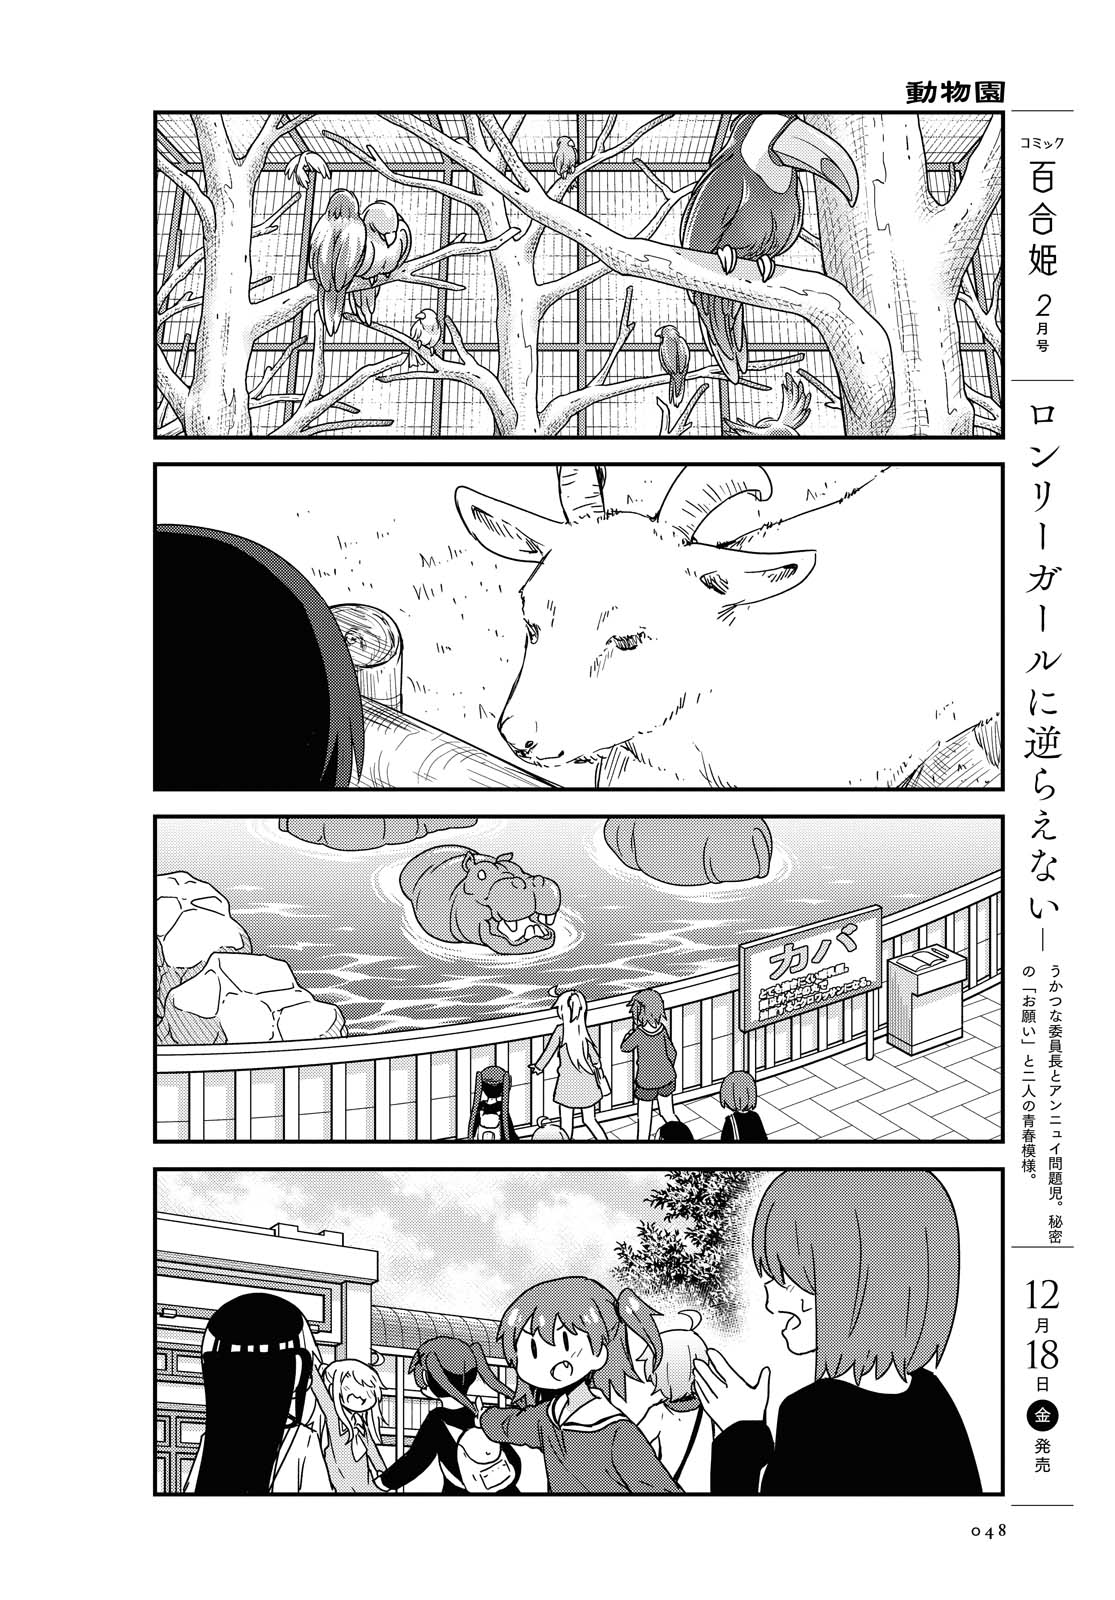 Watashi ni Tenshi ga Maiorita! - Chapter 74 - Page 16